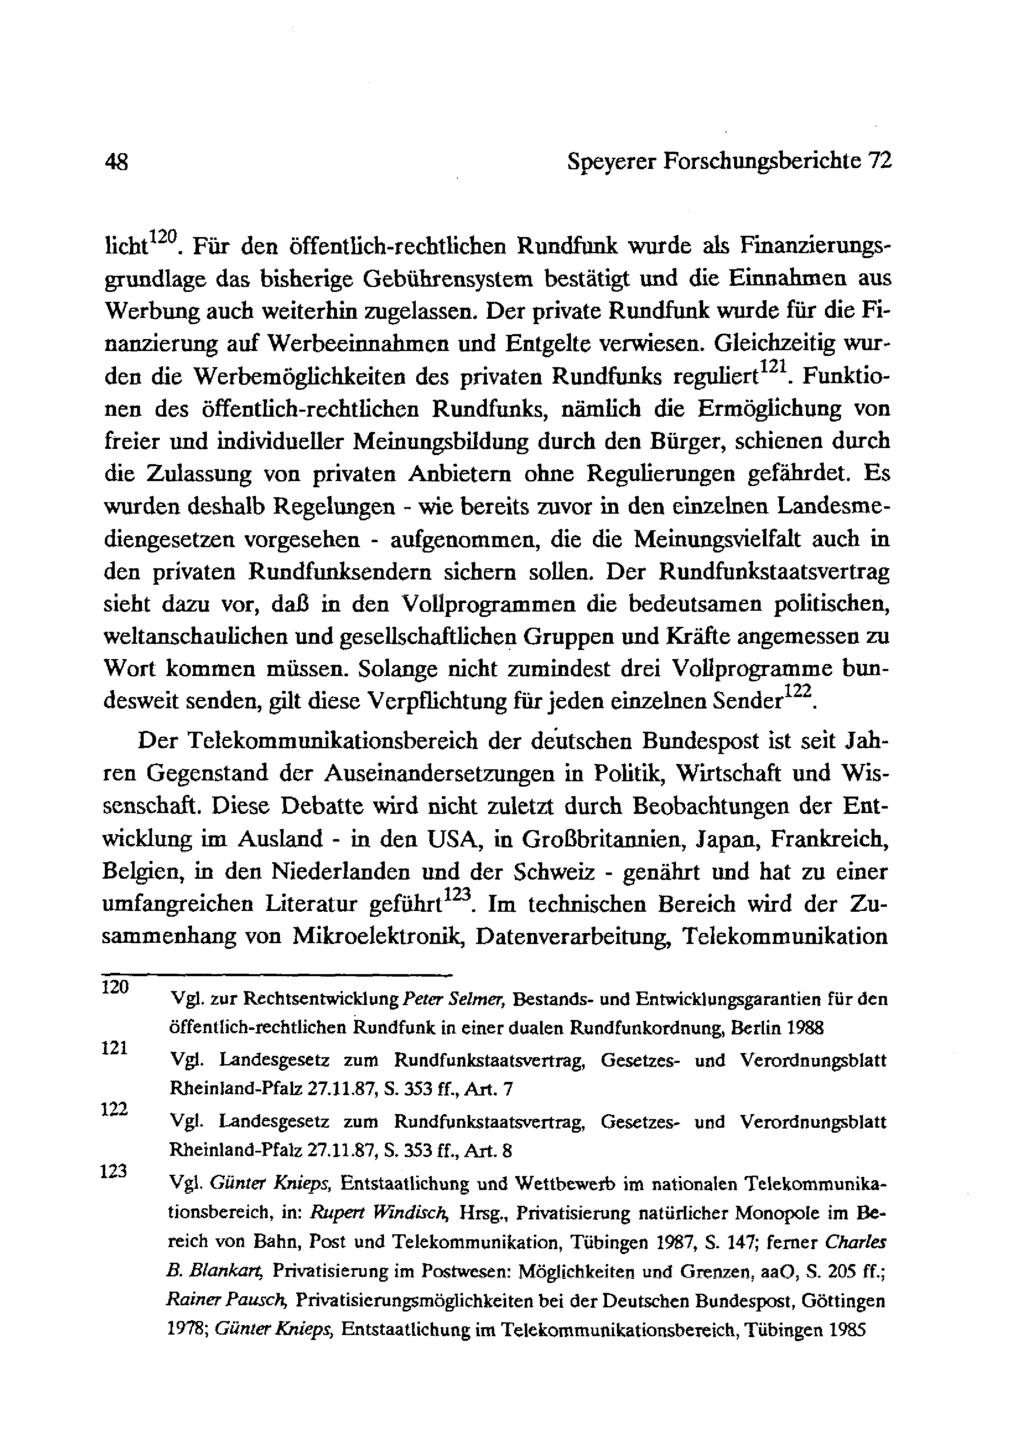 48 Soeverer Forschungsberichte 72 ~ ~ ~ licht 120.